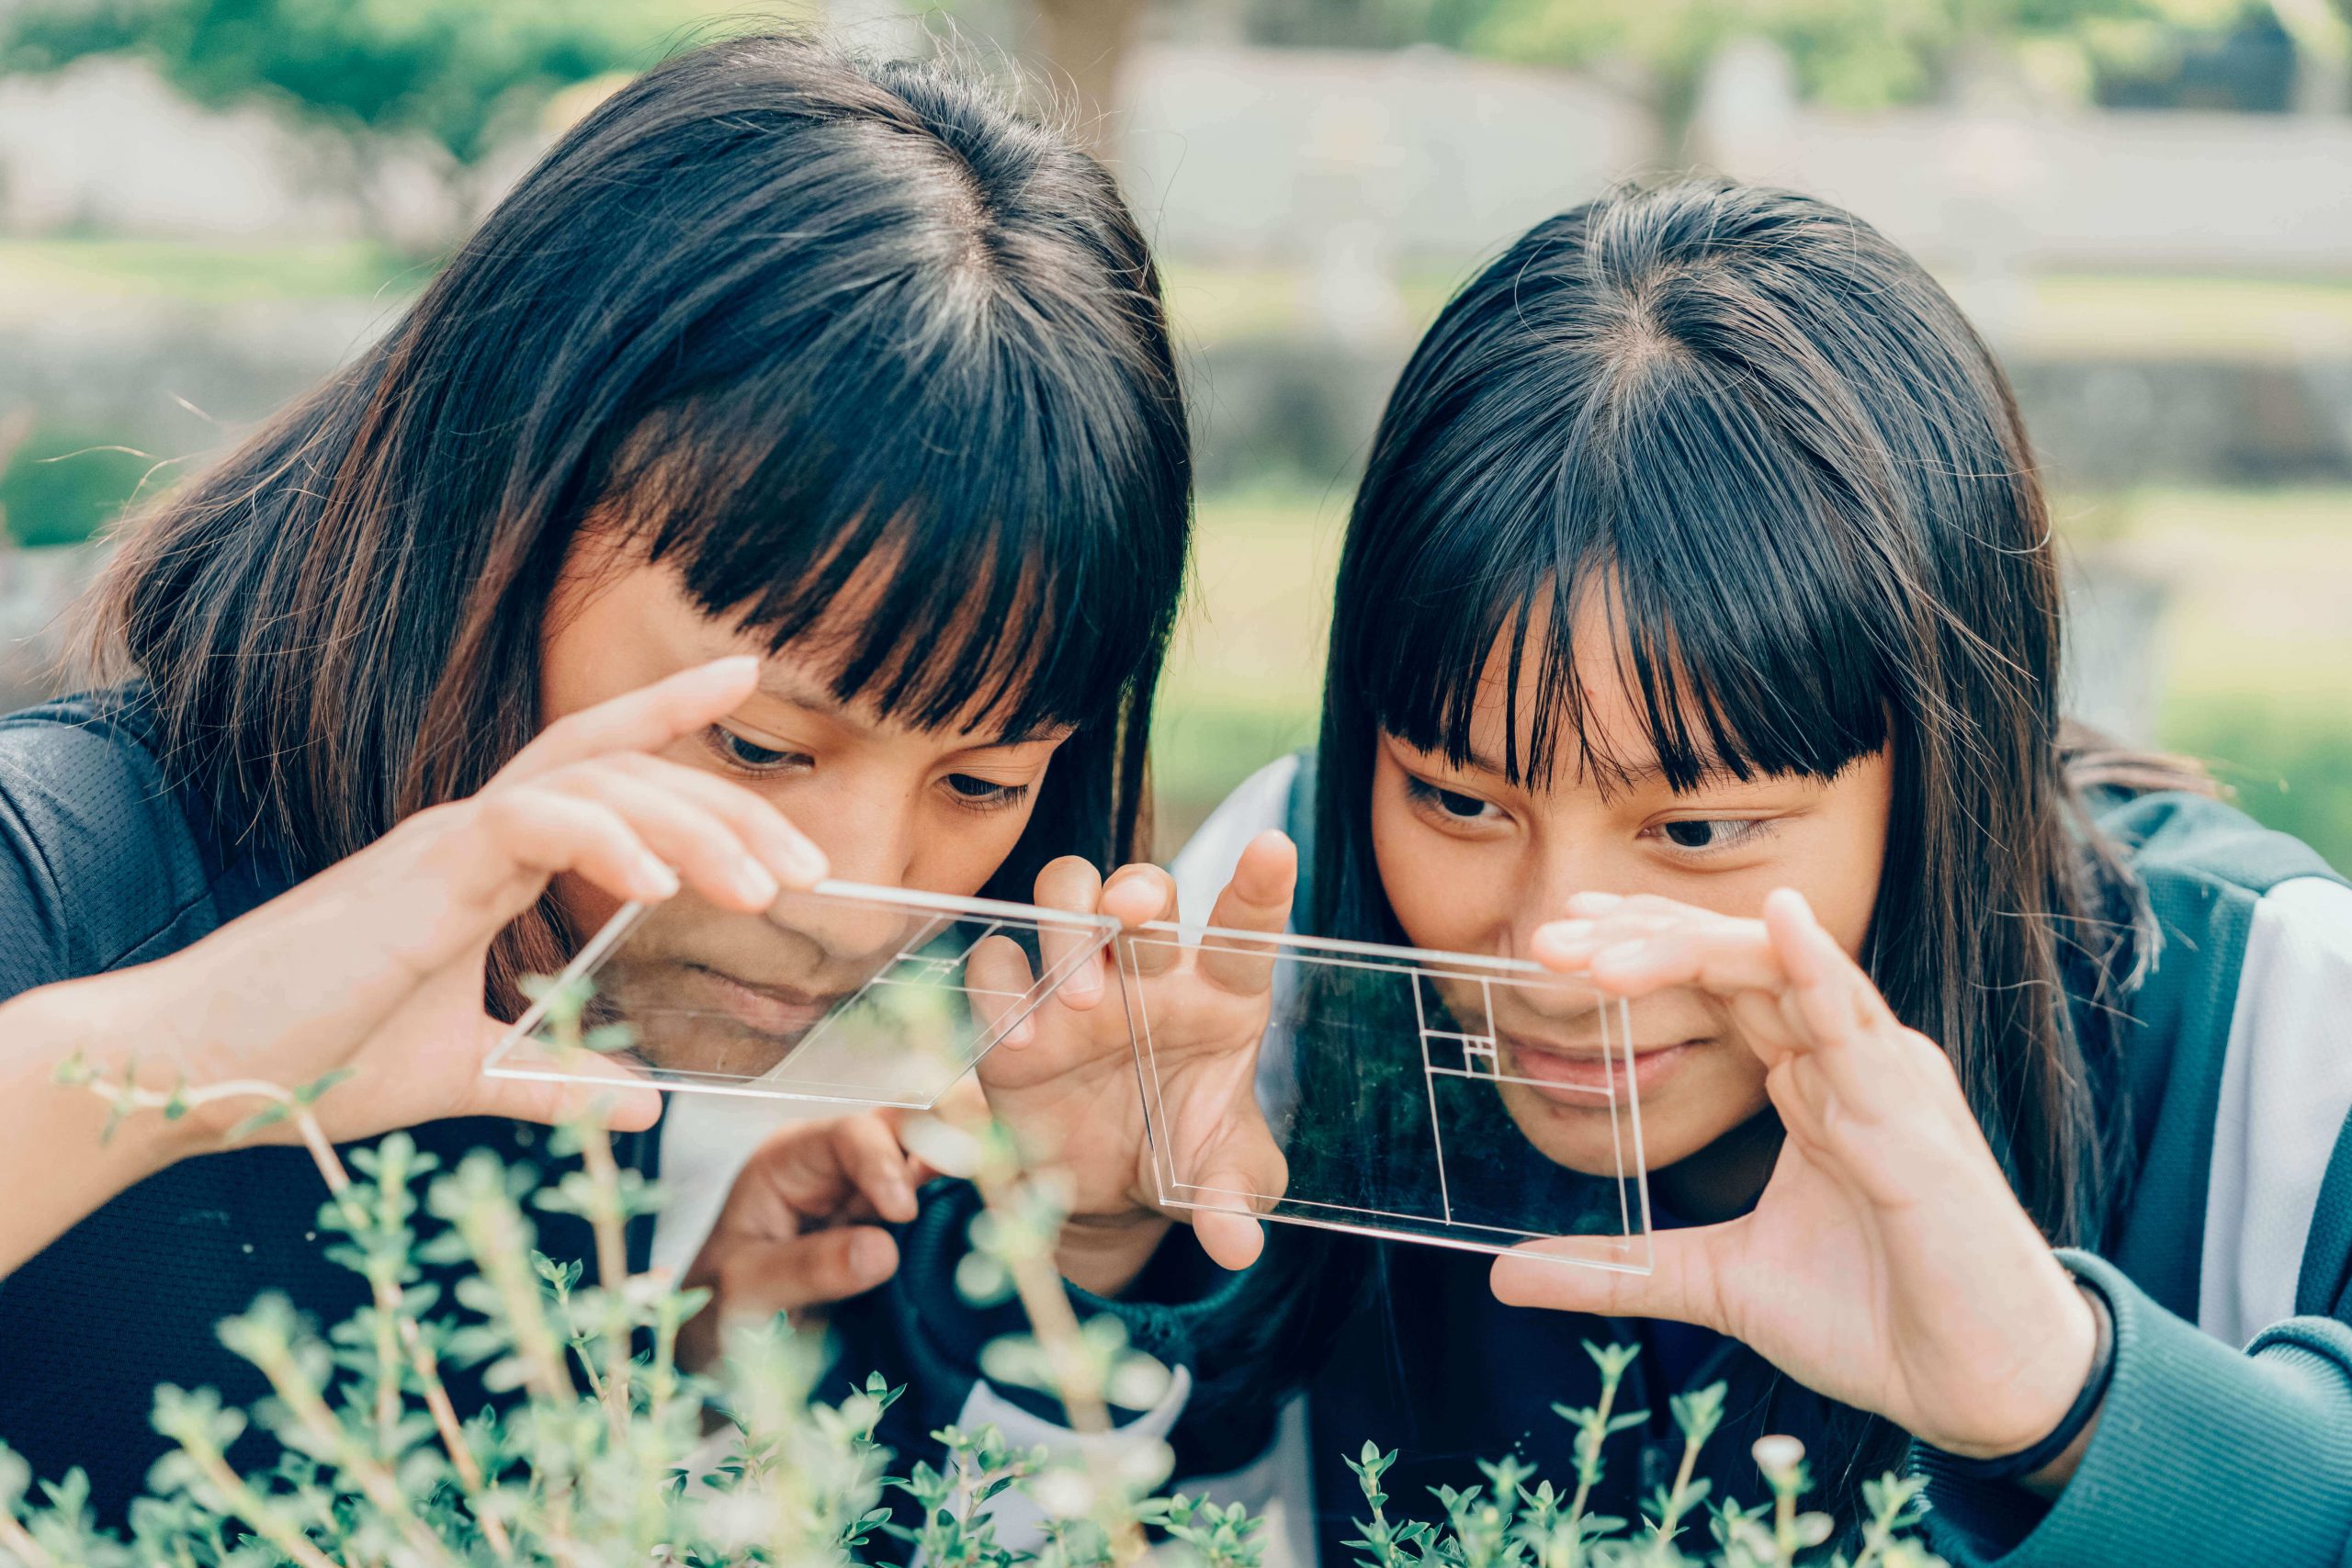 兩位女同學利用透明片上面的比例圖捕捉大自然的幾何比例